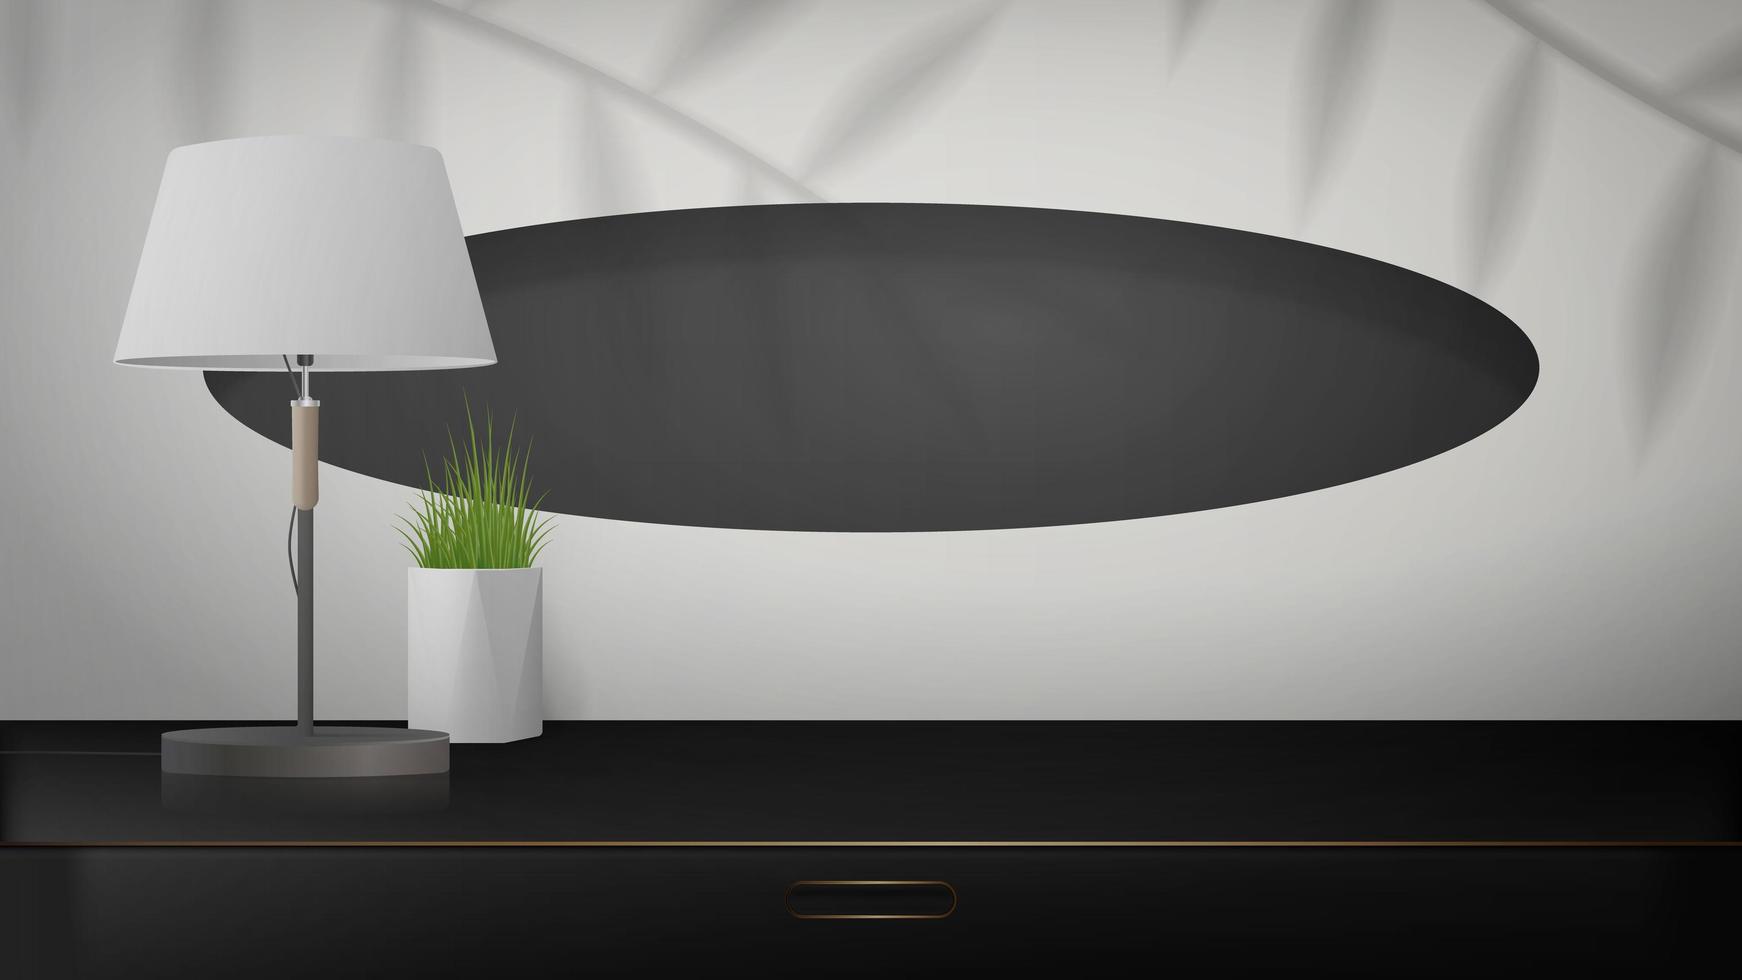 minimal scen för produktpresentation. svart garderob med guldaccenter, en bordslampa och en krukväxt. mockup för att visa upp en kosmetisk produkt, podium, sockel eller plattform. realistisk stil. vektor